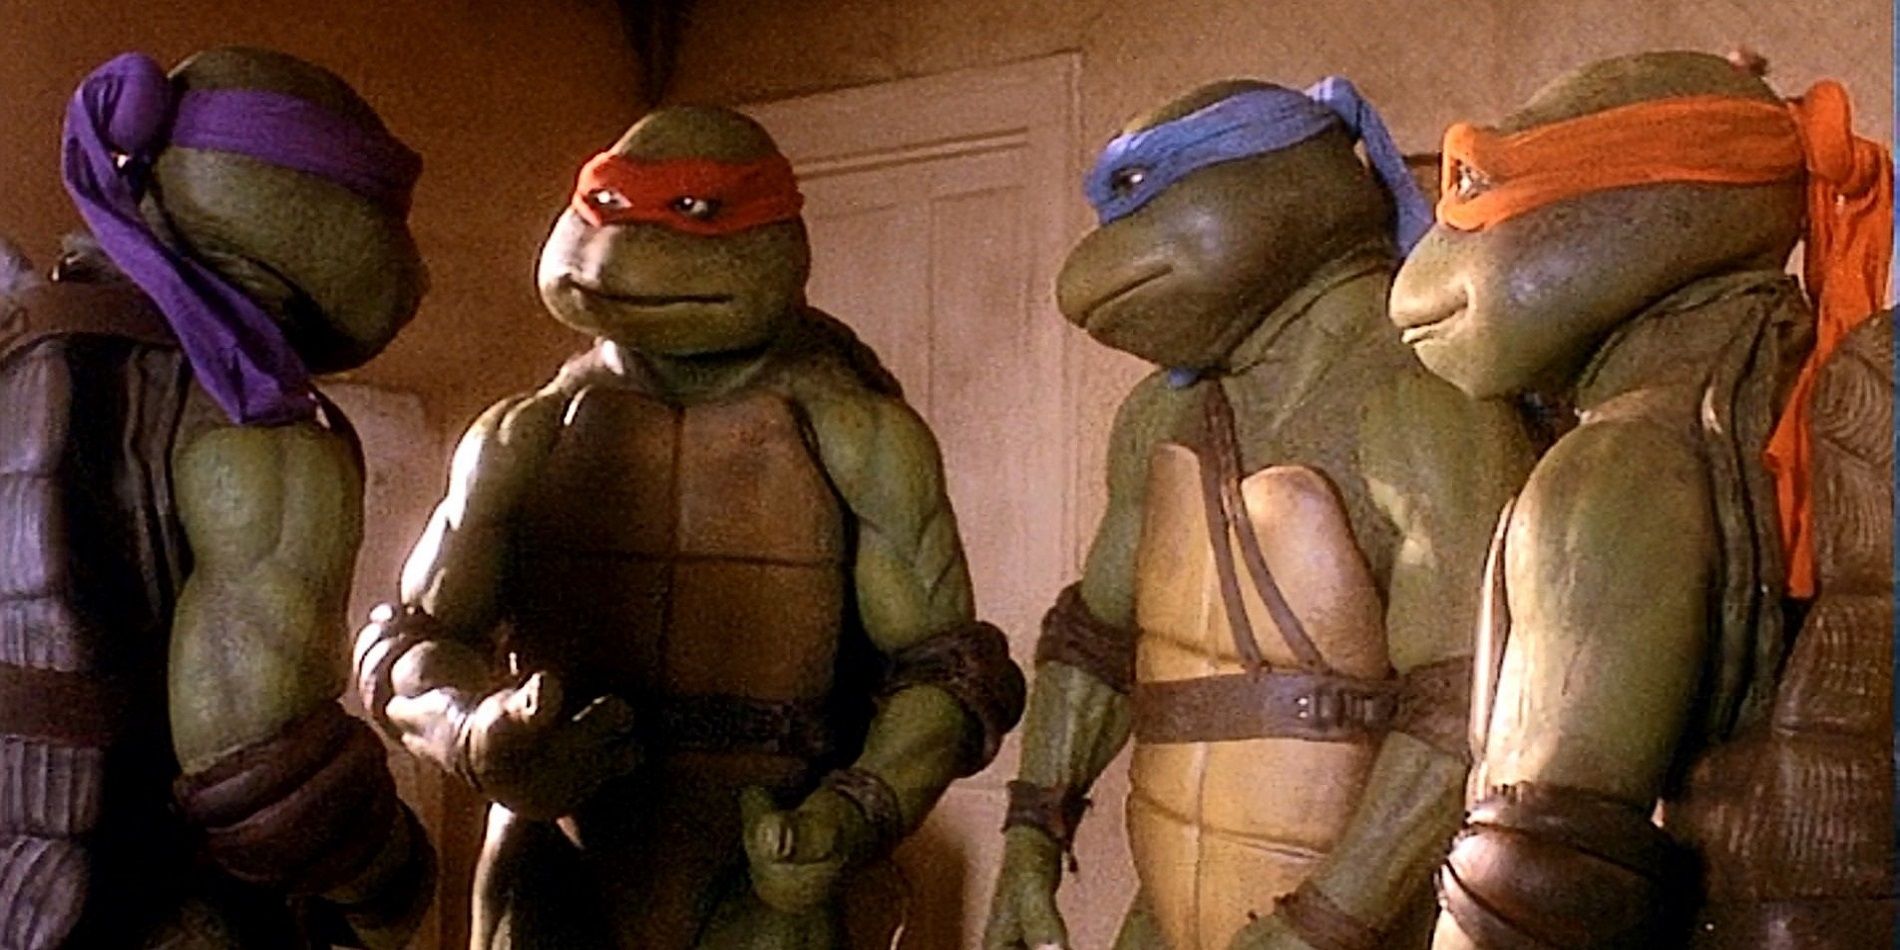 The team together in Teenage Mutant Ninja Turtles